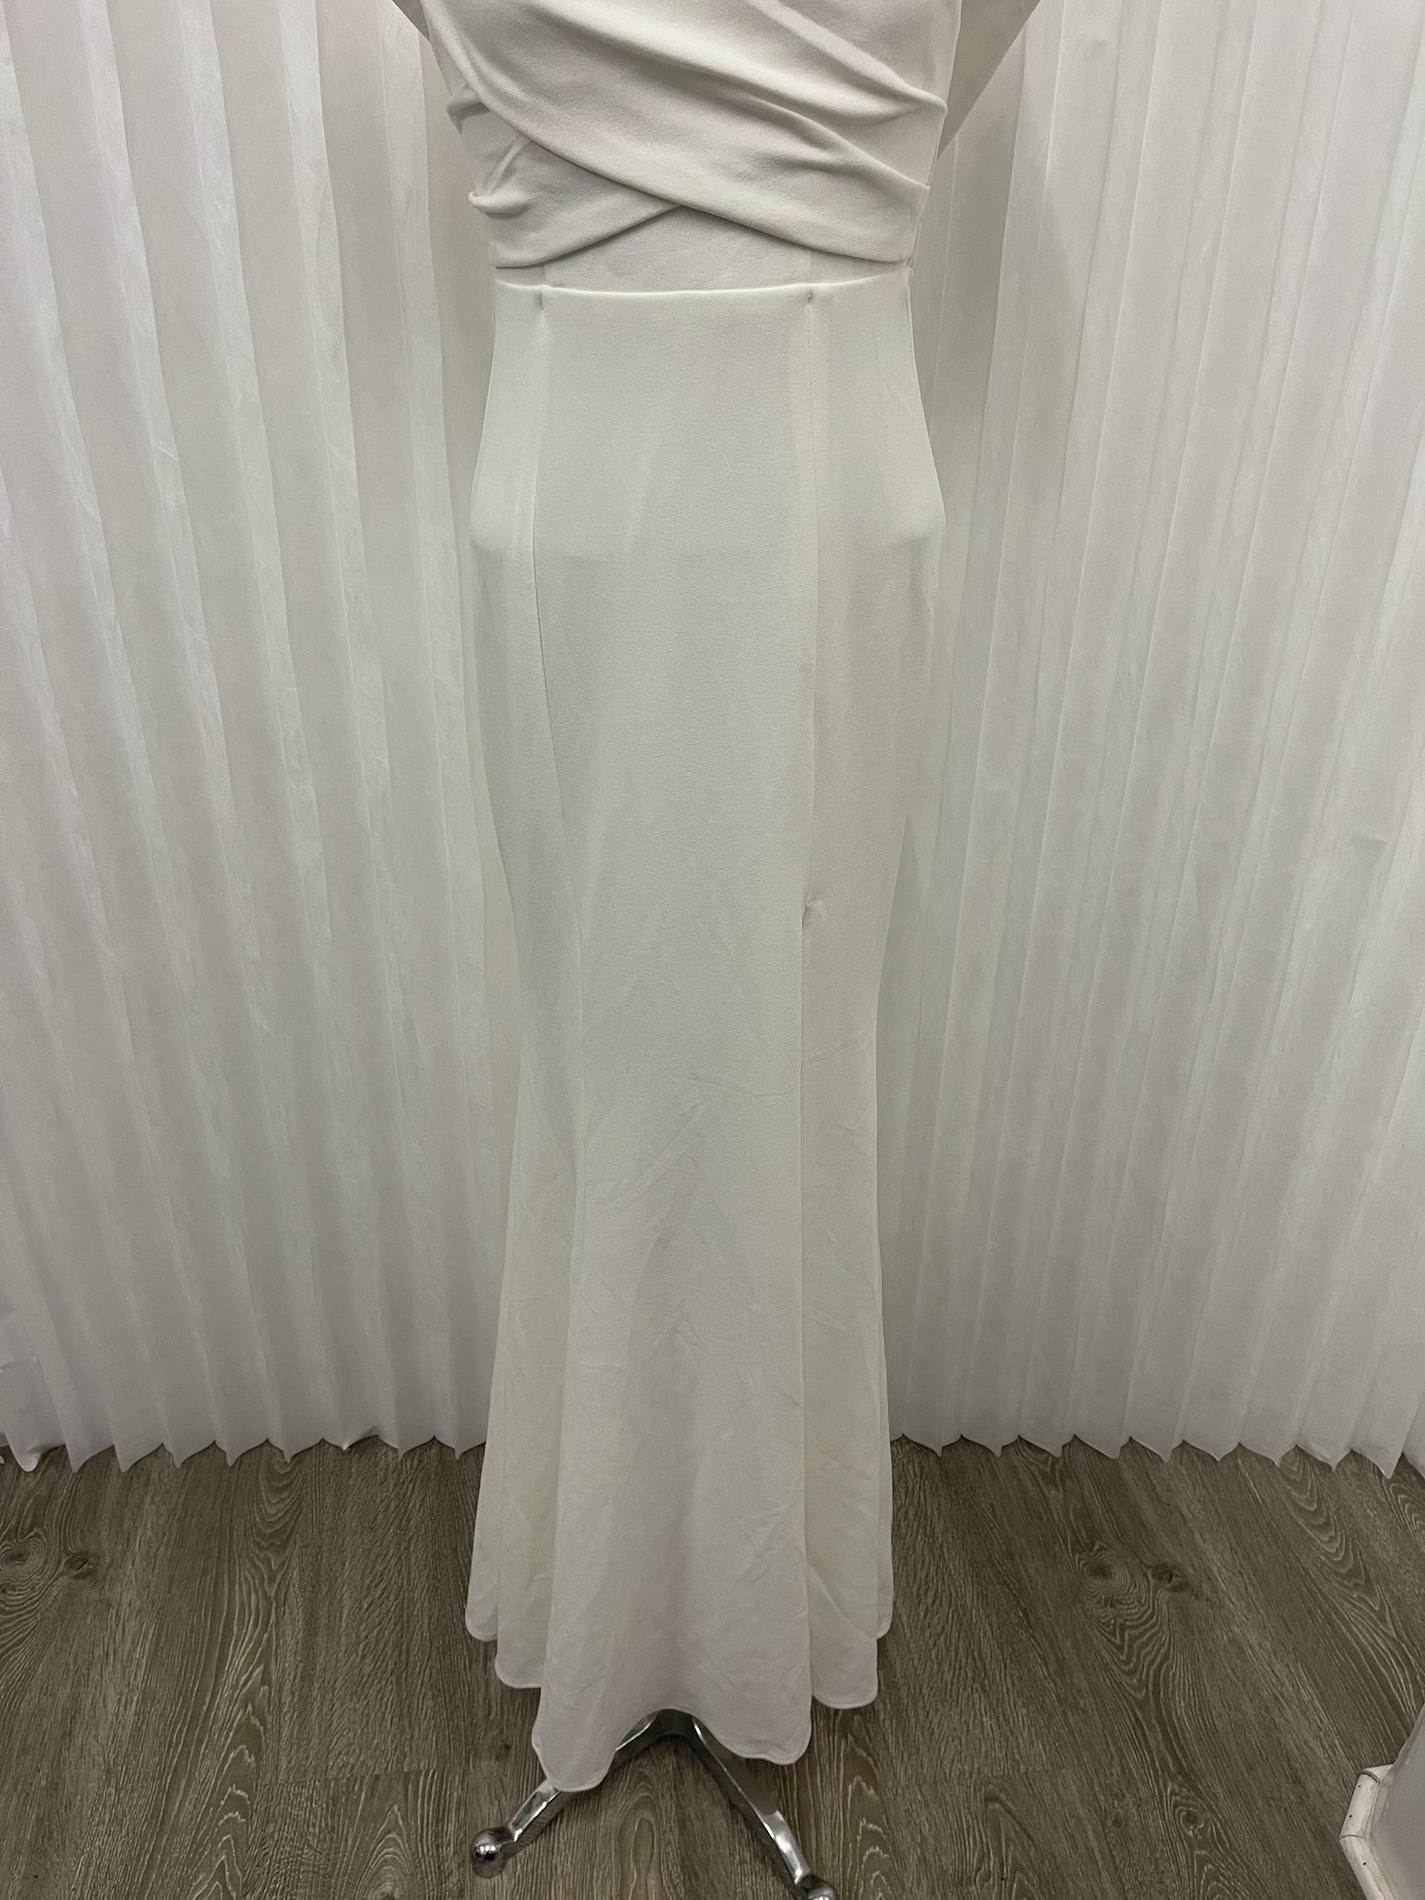 Fashion Nova Size 6 Off The Shoulder White Side Slit Dress on Queenly